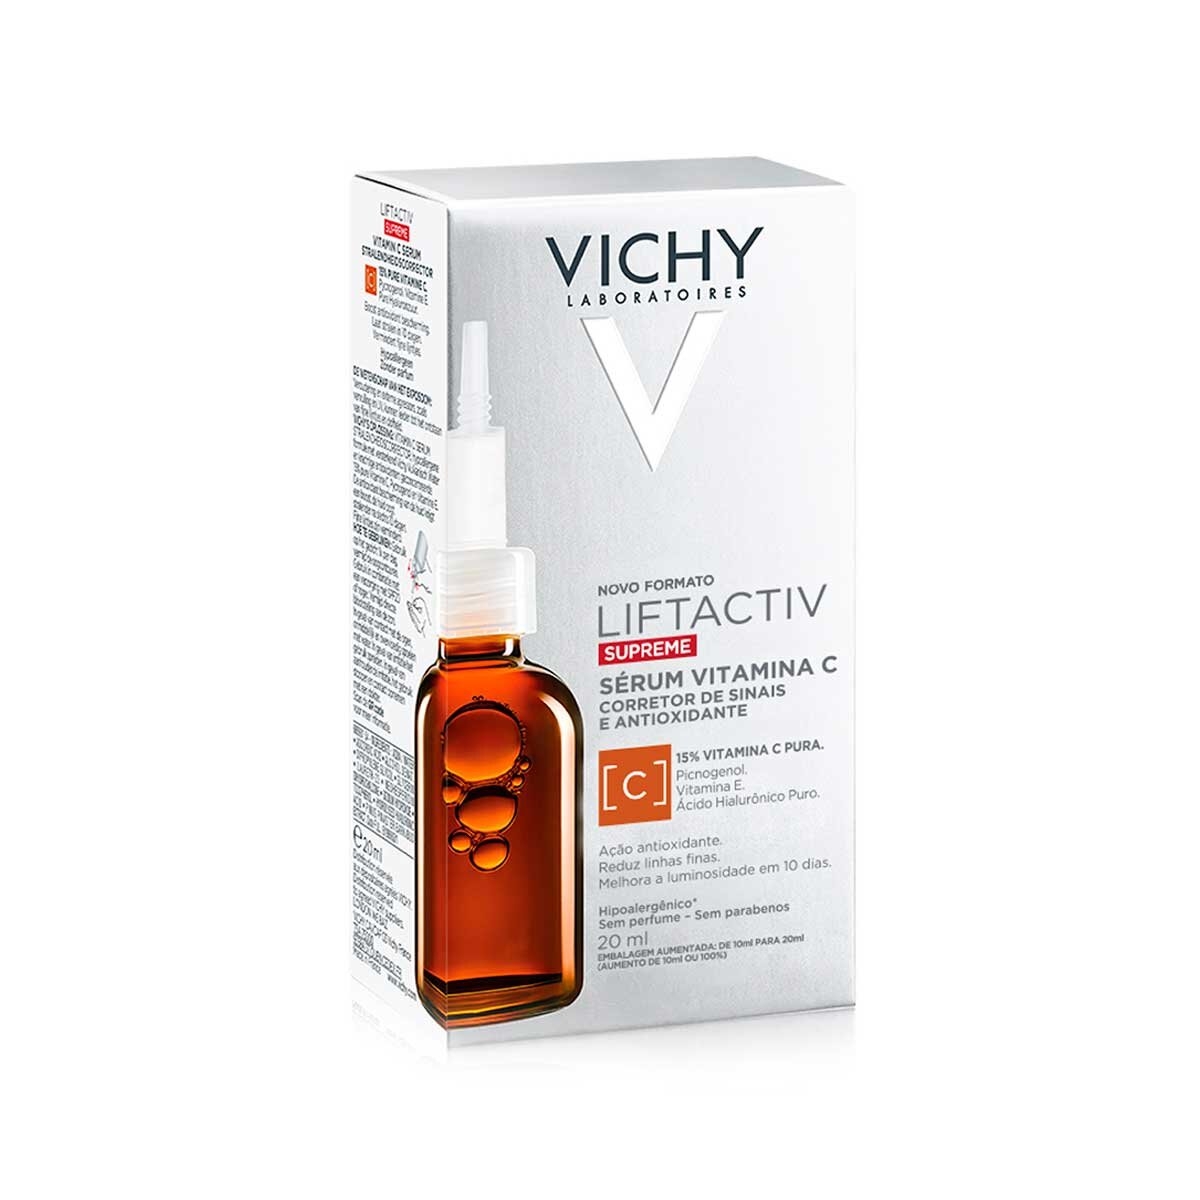 Vichy Liftacitv Retinol Ha Advanced 30ml